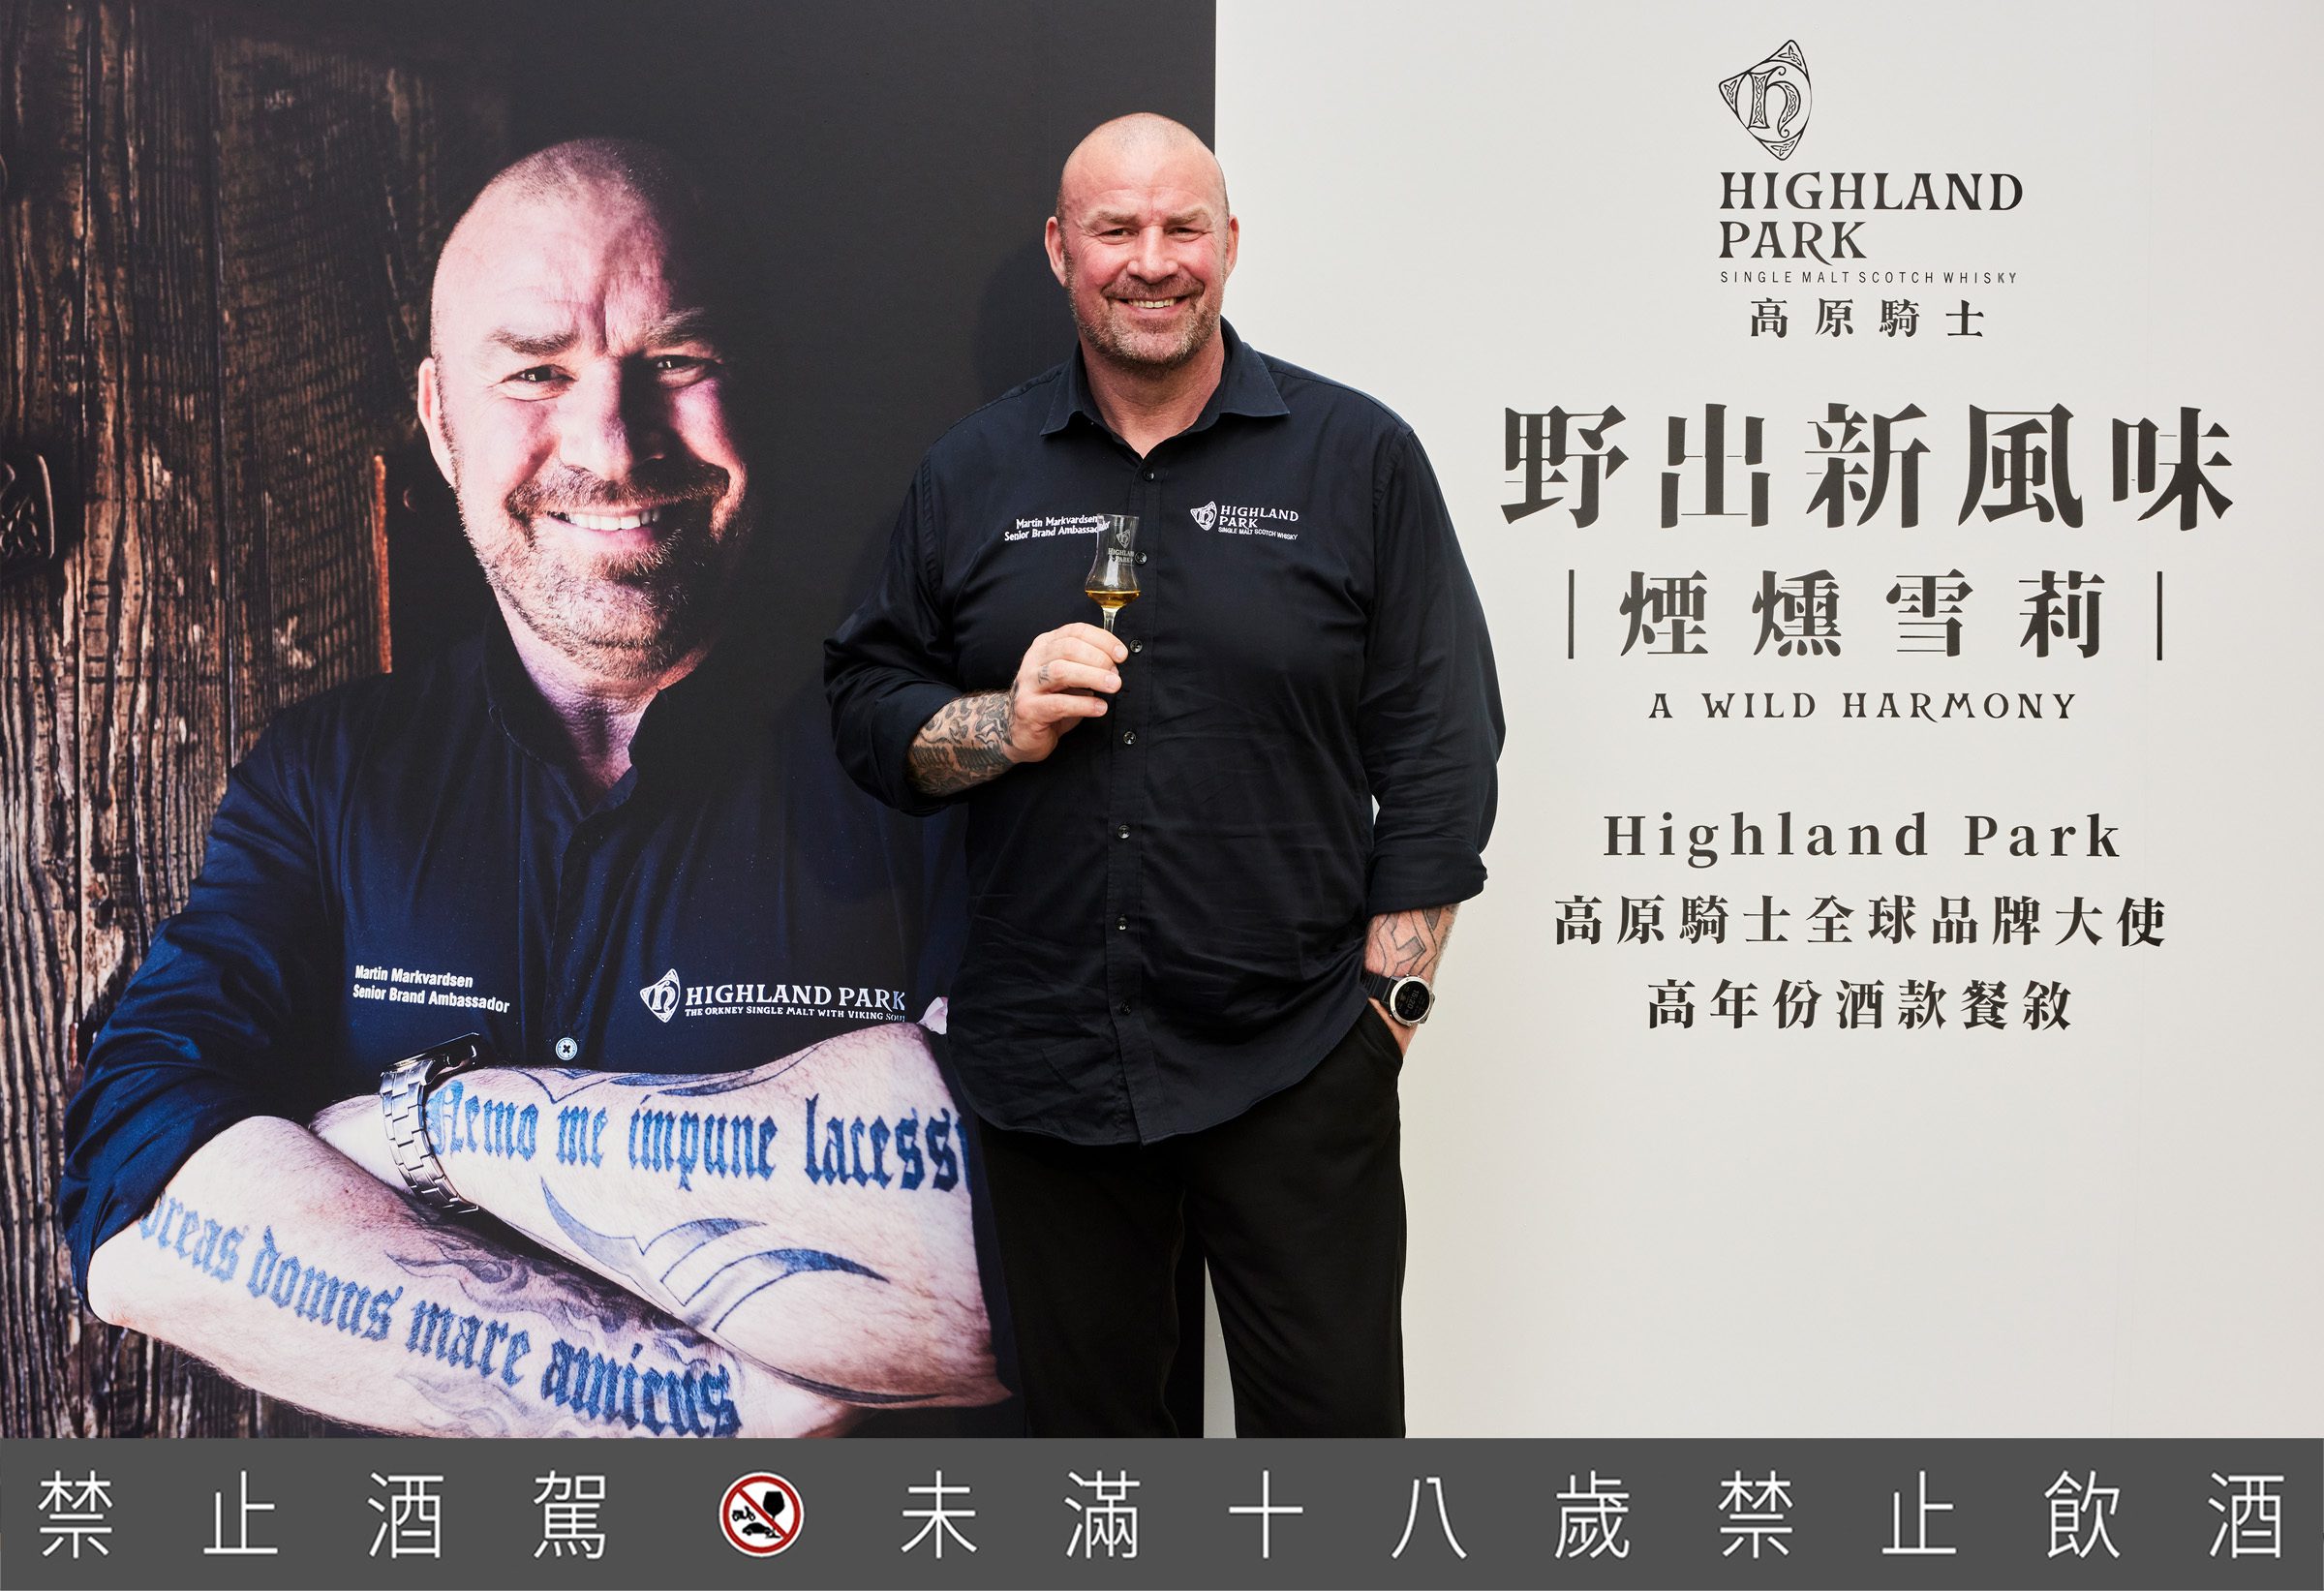 高原騎士全球品牌大使馬汀（Martin Markvardsen）曾在 2018 年被威士忌雜誌授予年度蘇格蘭威士忌年度品牌大使獎，2021 年也獲得了蘇格蘭雙耳小酒杯執持者協會頒發成為QUAICH 的大師，以表彰他對蘇格蘭威士忌行業的傑出貢獻。